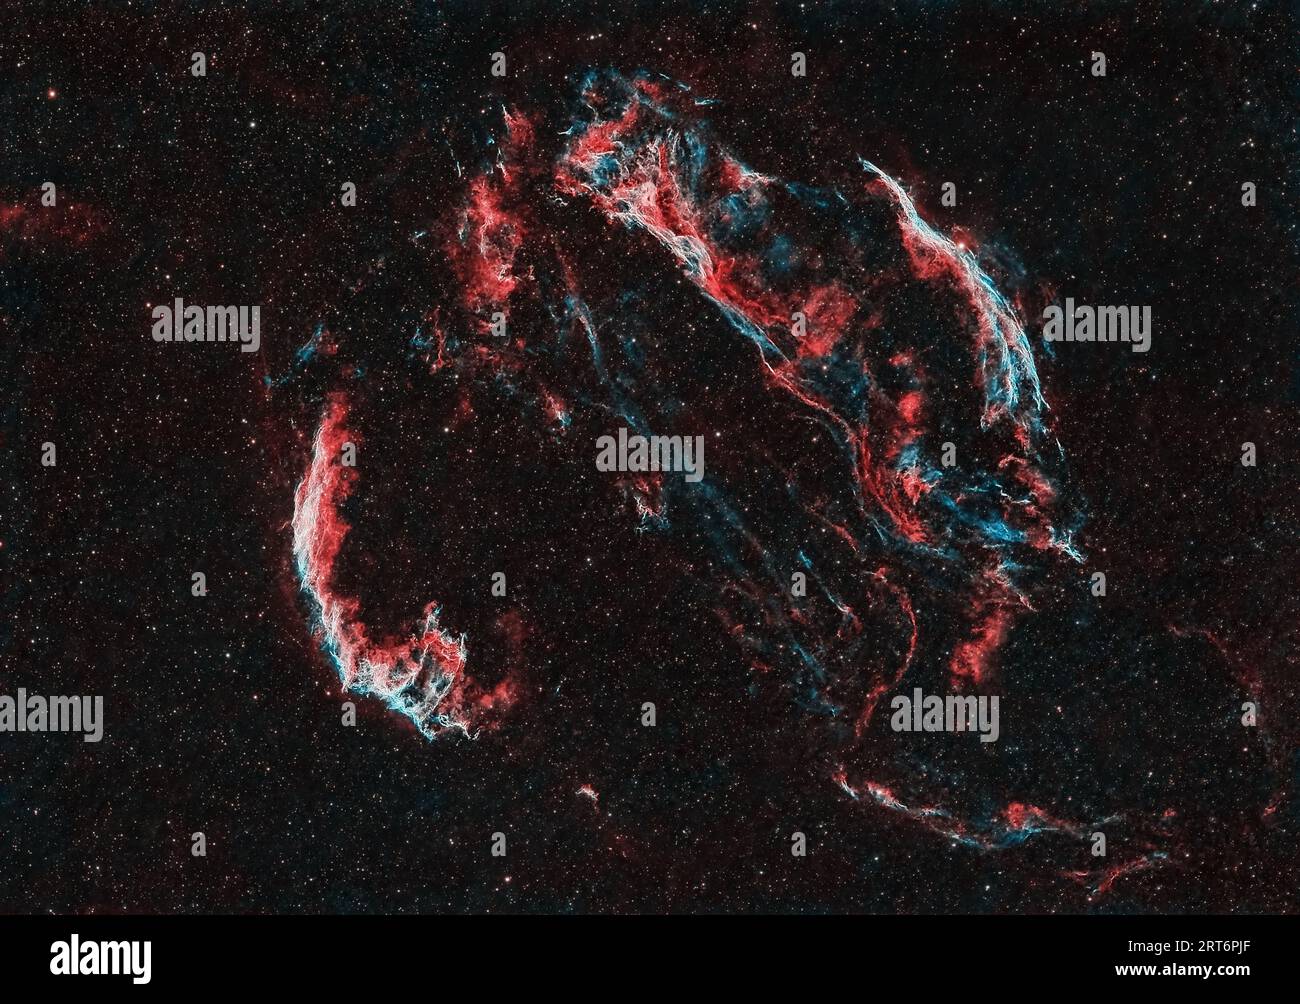 Esplora i resti di un'esplosione stellare nel Cygnus Loop, un'enorme supernova che si trova nella costellazione del Cygnus. Foto Stock